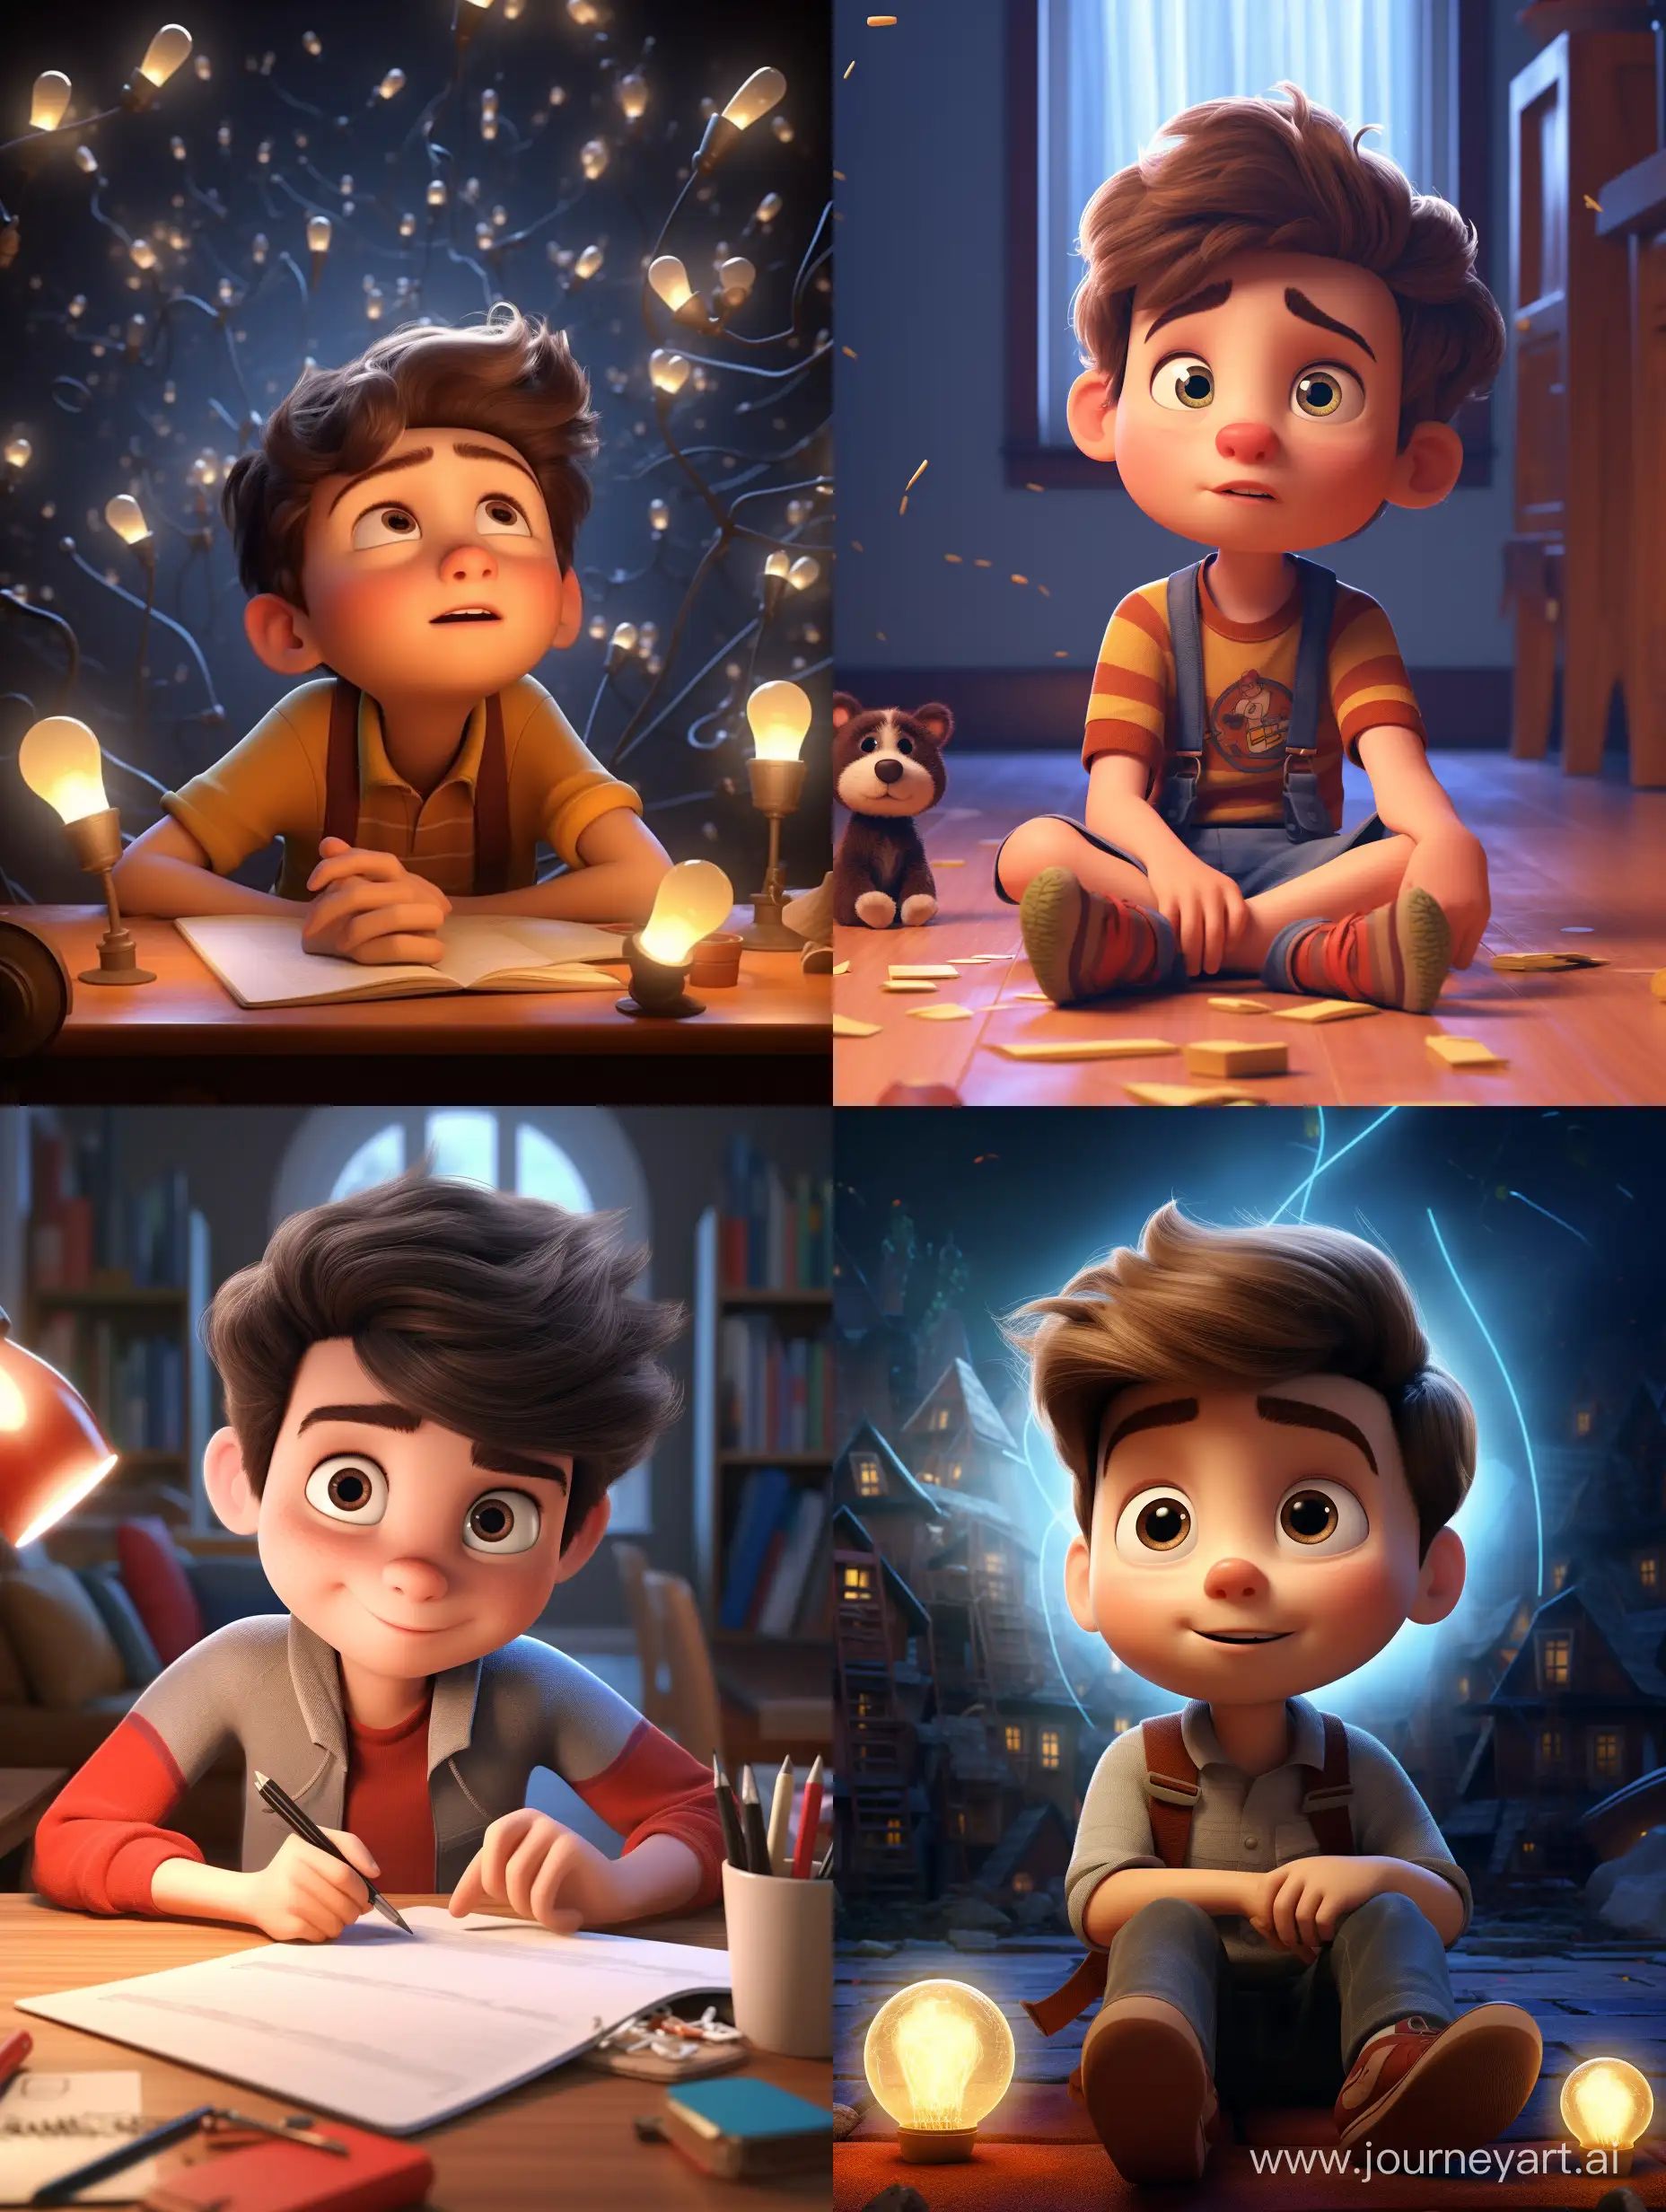 Creative-Boy-with-Pixar-Style-Idea-3D-Animation